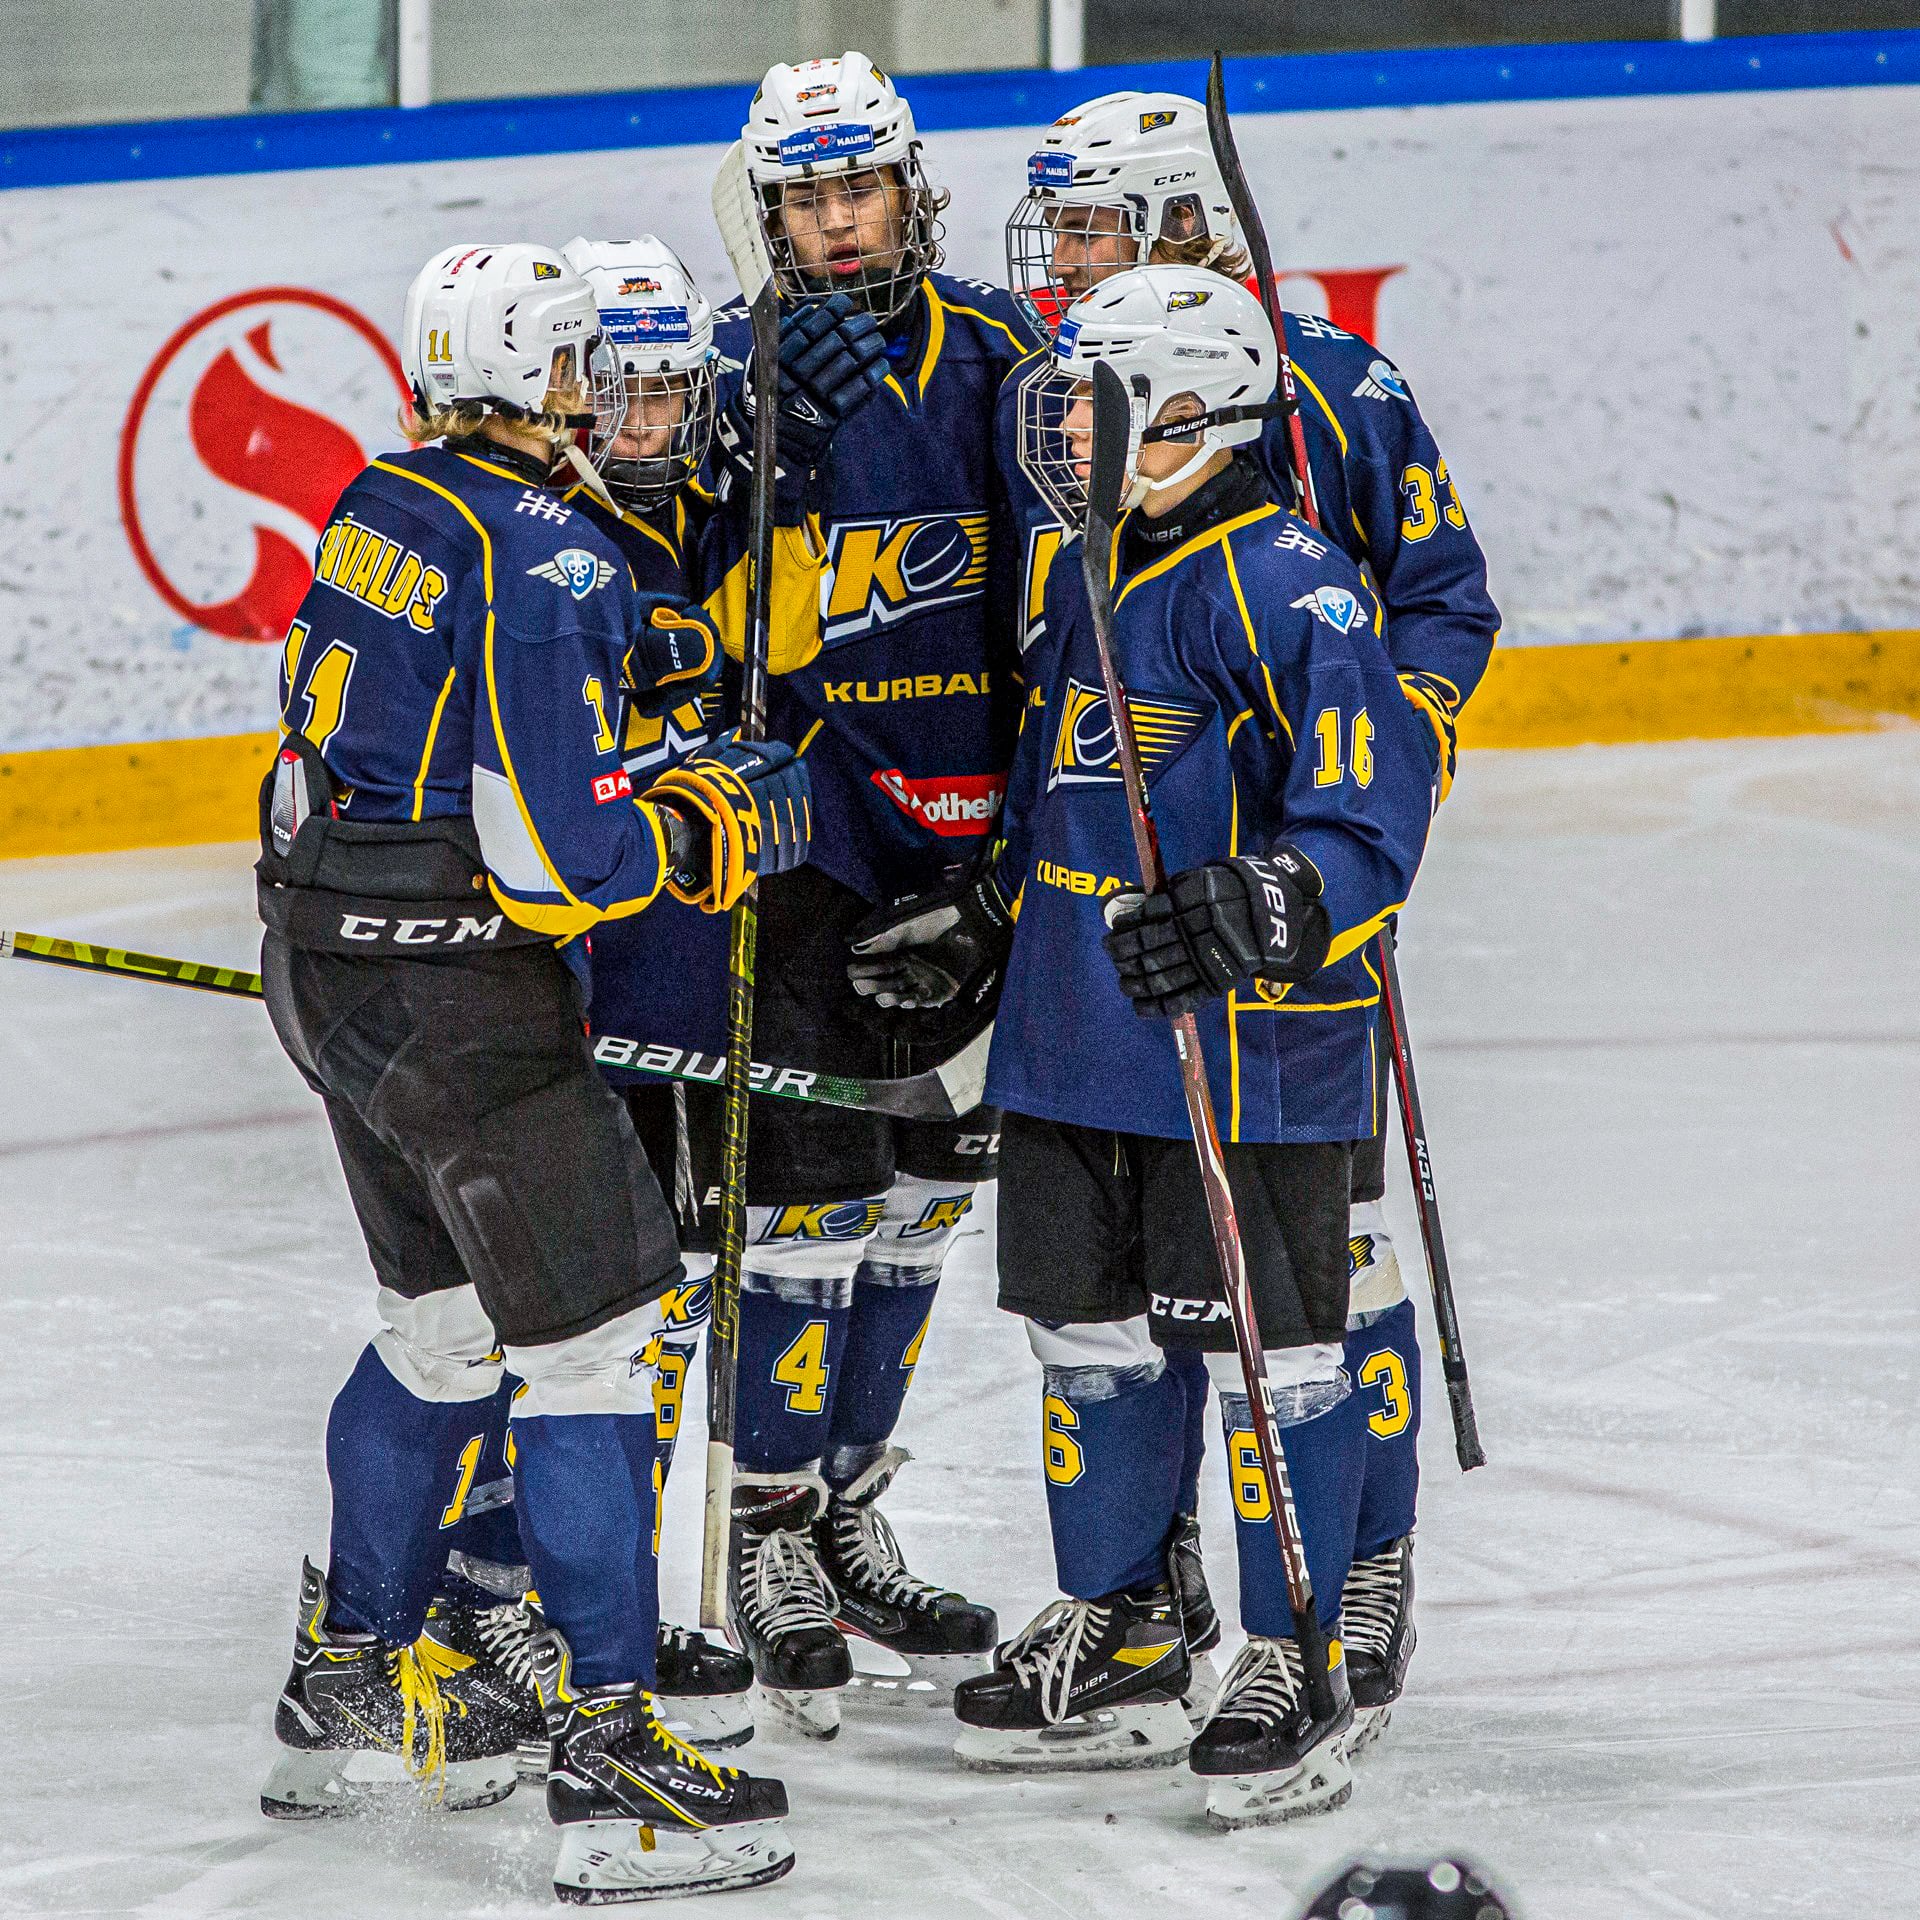 Hokeja klubs “Kurbads” debitēs Igaunijas augstākajā hokeja līgā